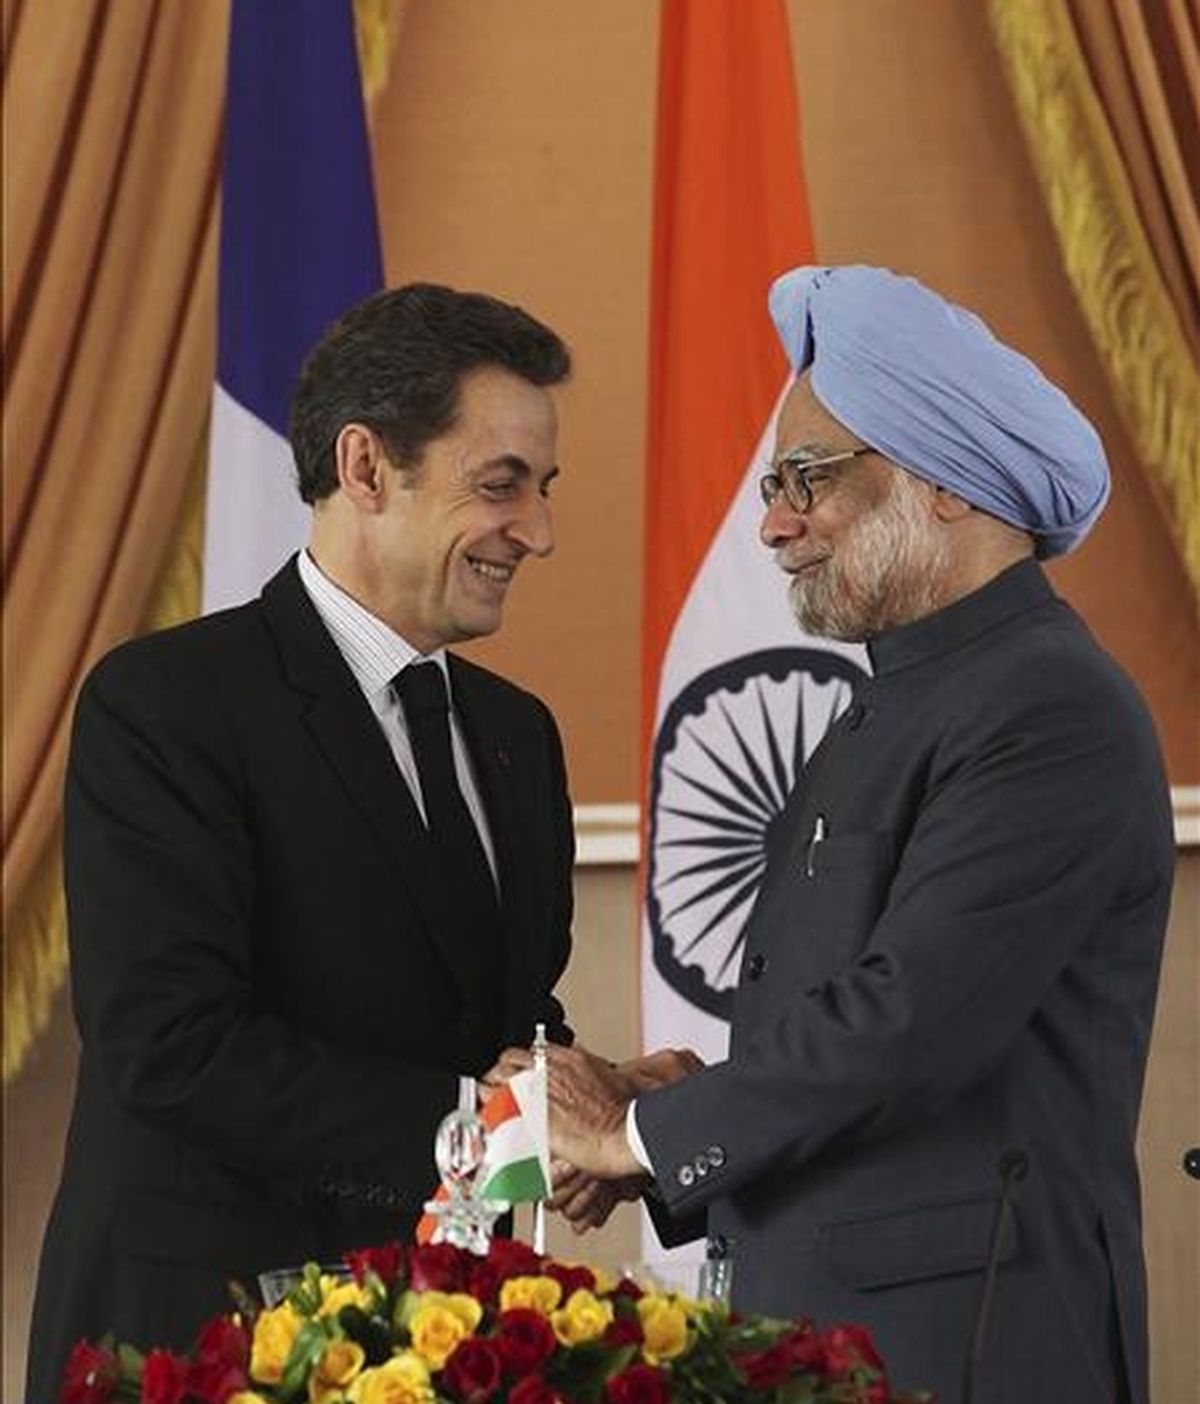 El presidente francés, Nicolás Sarkozy (i), estrecha la mano del primer ministro indio, Manmohan Singh, tras una rueda de prensa conjunta en Nueva Delhi (India), hoy, lunes 06 de diciembre de 2010. Sarkozy, cerró hoy en Nueva Delhi acuerdos que colocan a Francia como uno de los socios preferentes de la India en materia nuclear. EFE